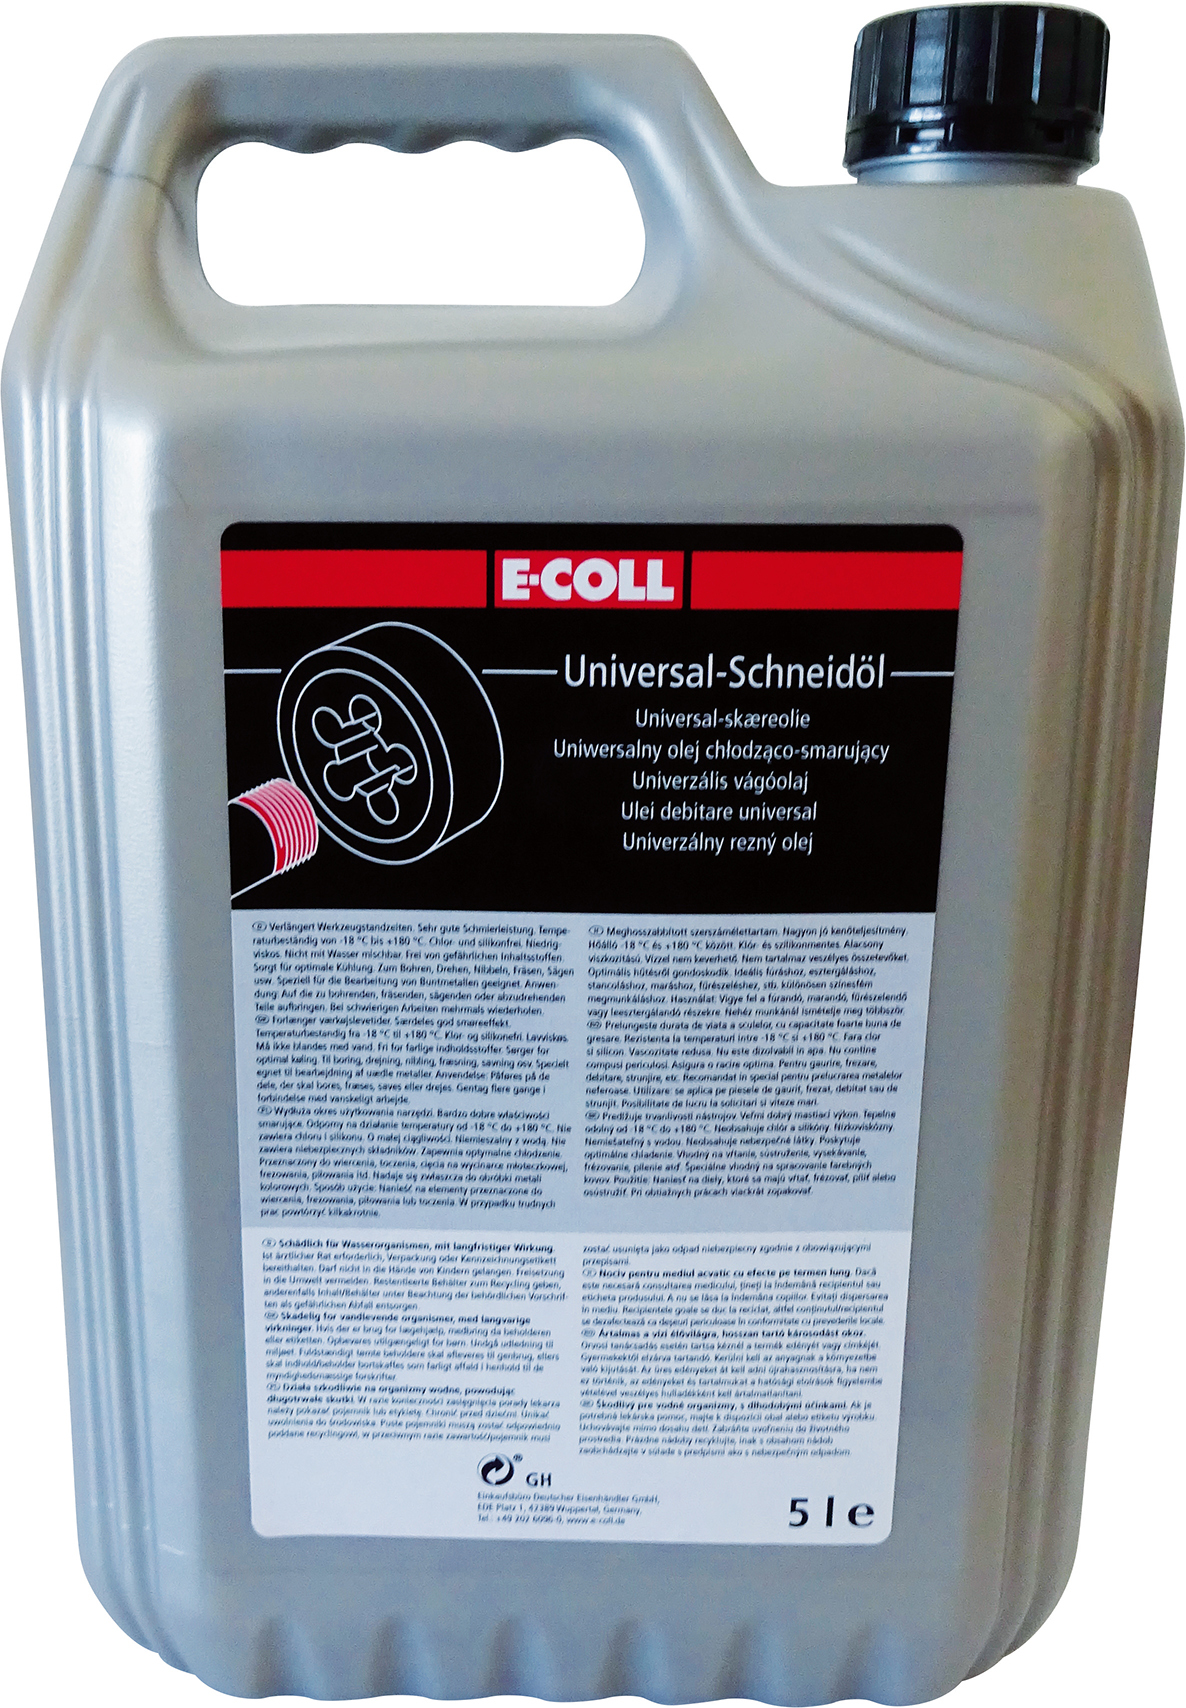 E-COLL Universal Schneidöl 5L